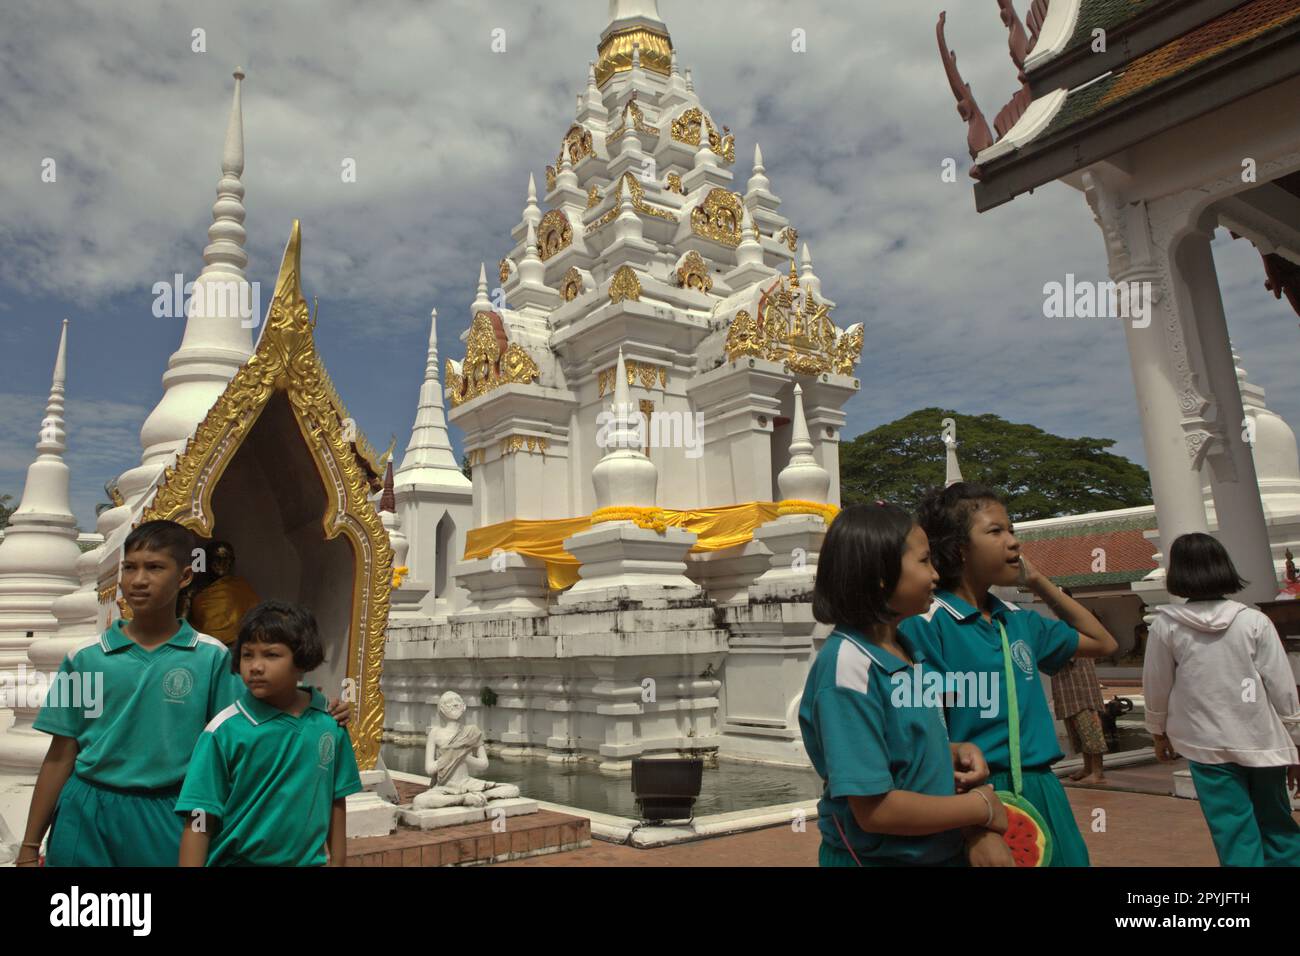 Les étudiants visitant Wat Phra Borommathat Chaiya, un ancien temple bouddhiste construit dans l'architecture de Srivijaya, qui est situé à Chaiya, Surat Thani, Thaïlande. Banque D'Images